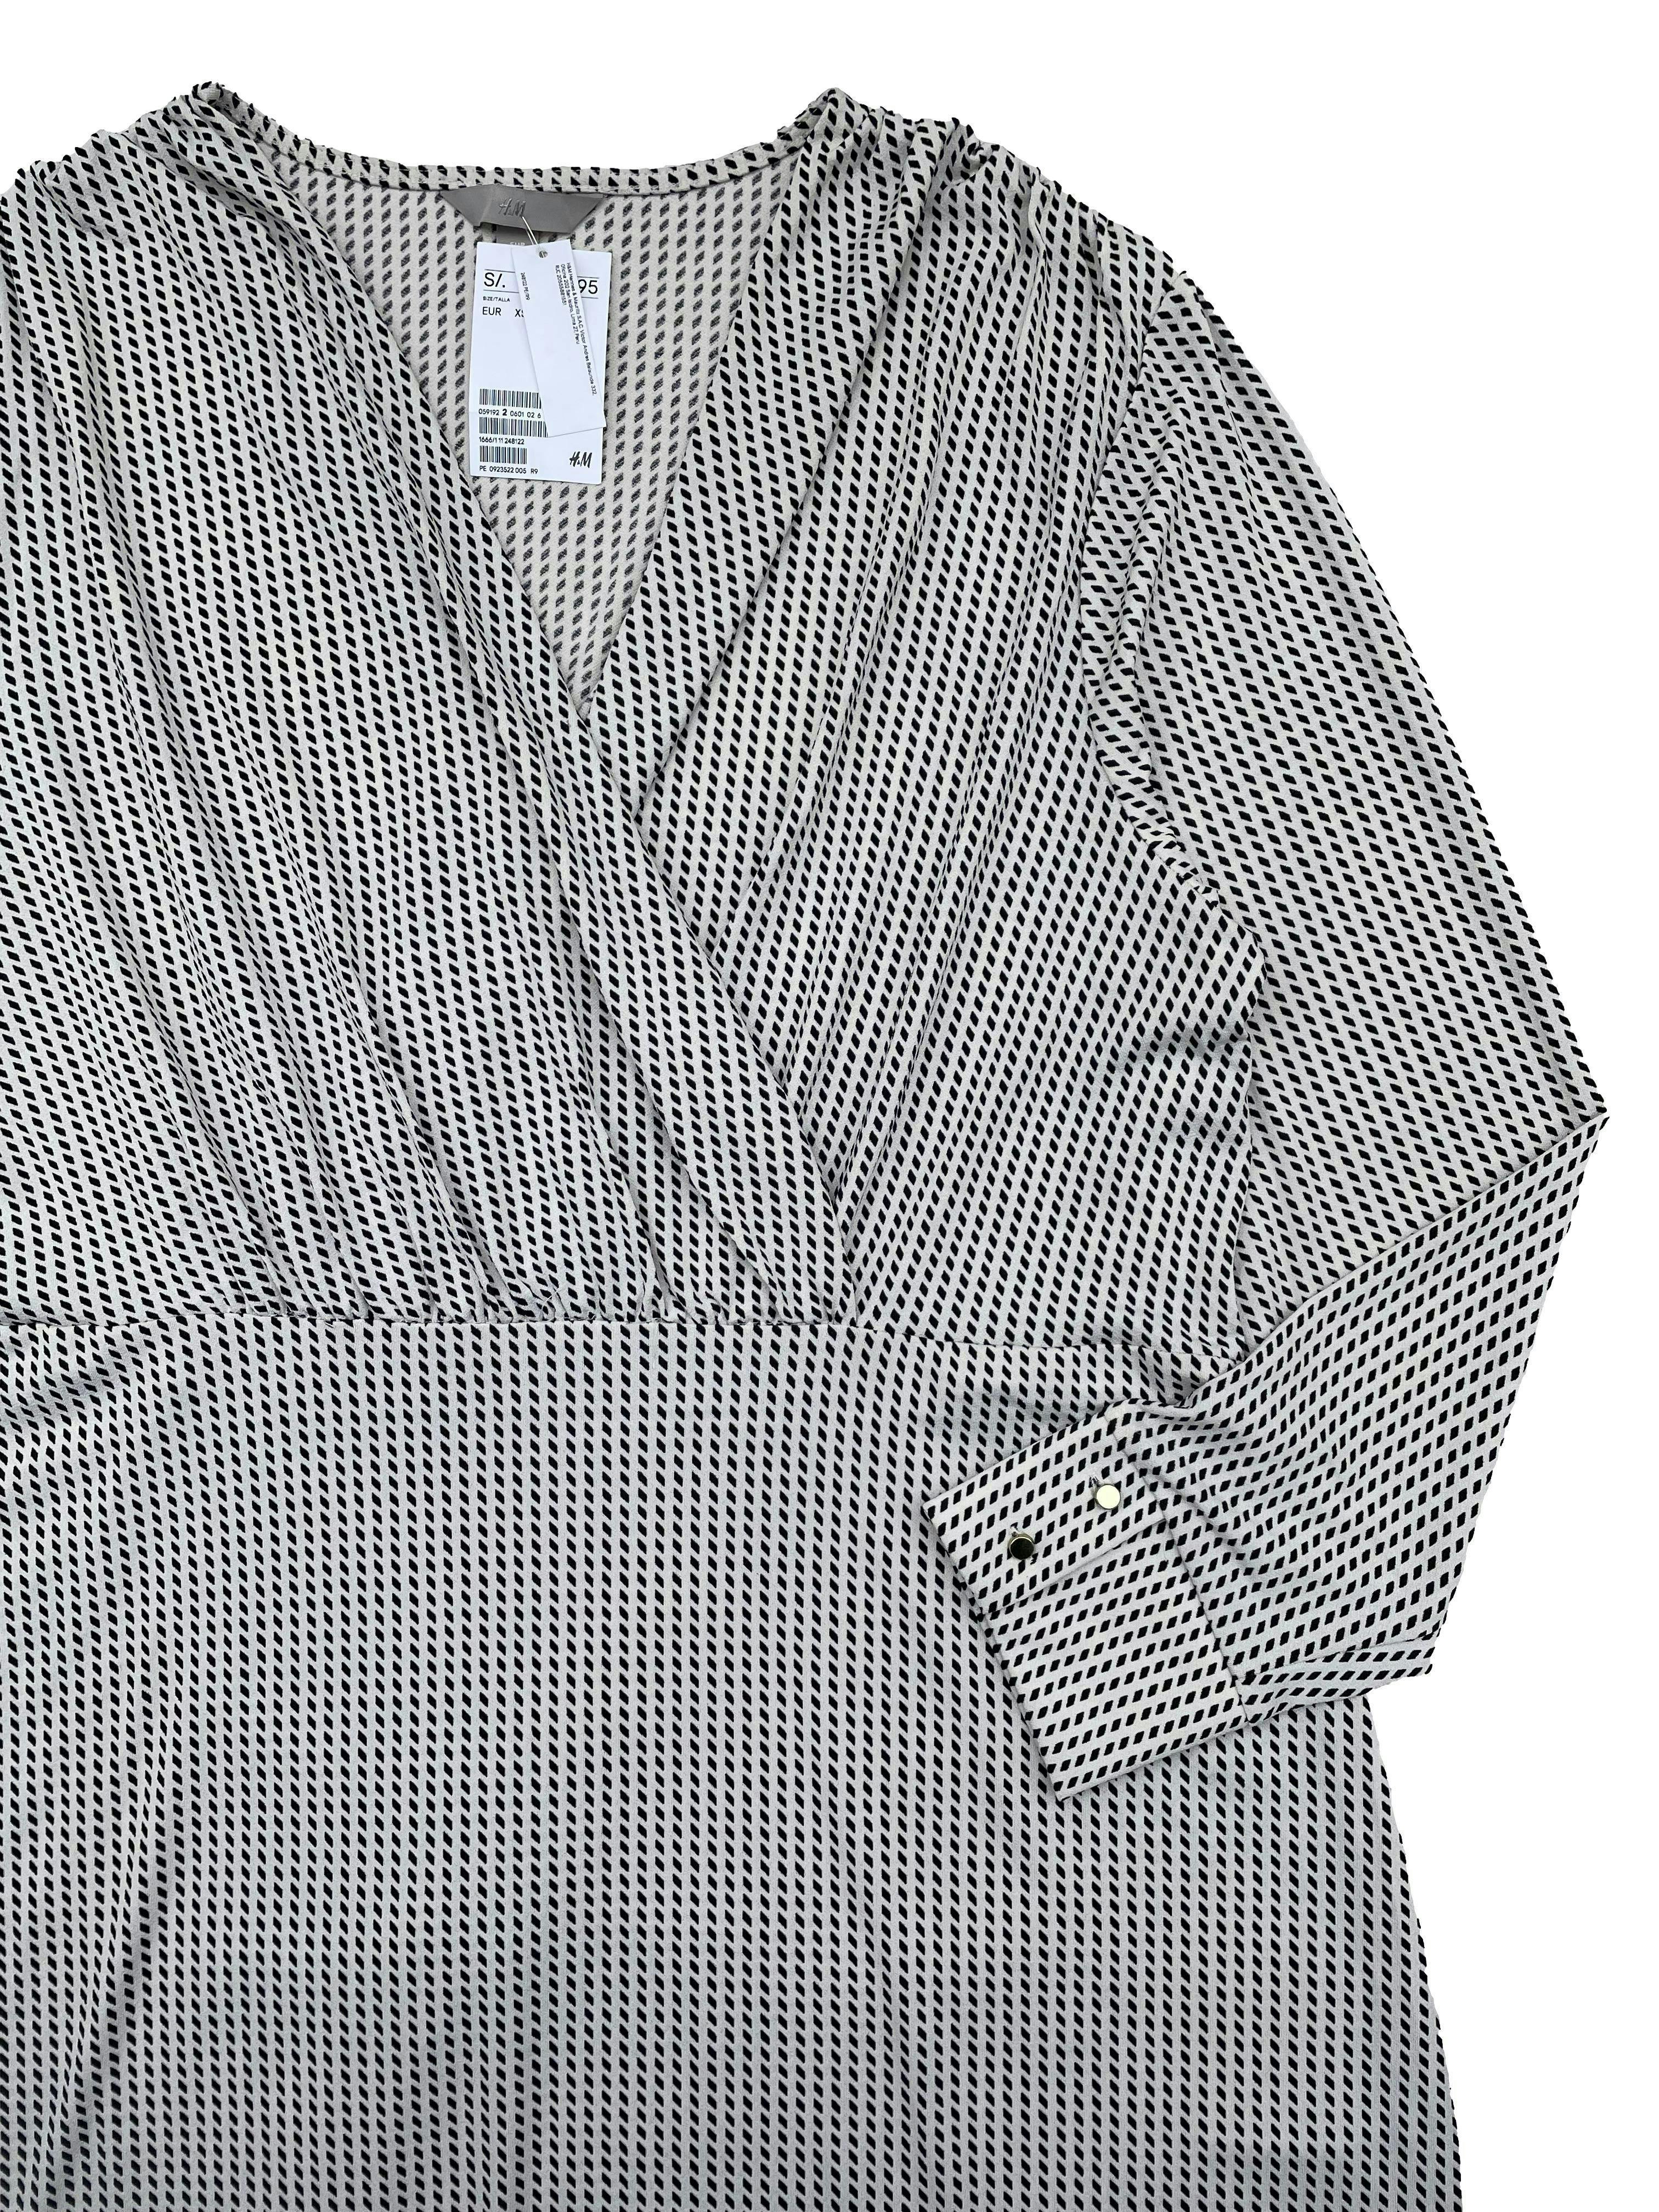 Vestido H&M blanco con cuadrados negros,tela fresca stretch, escote cruzado y corte en cintura. Nuevo con etiqueta. Busto 116cm, Largo 100cm.